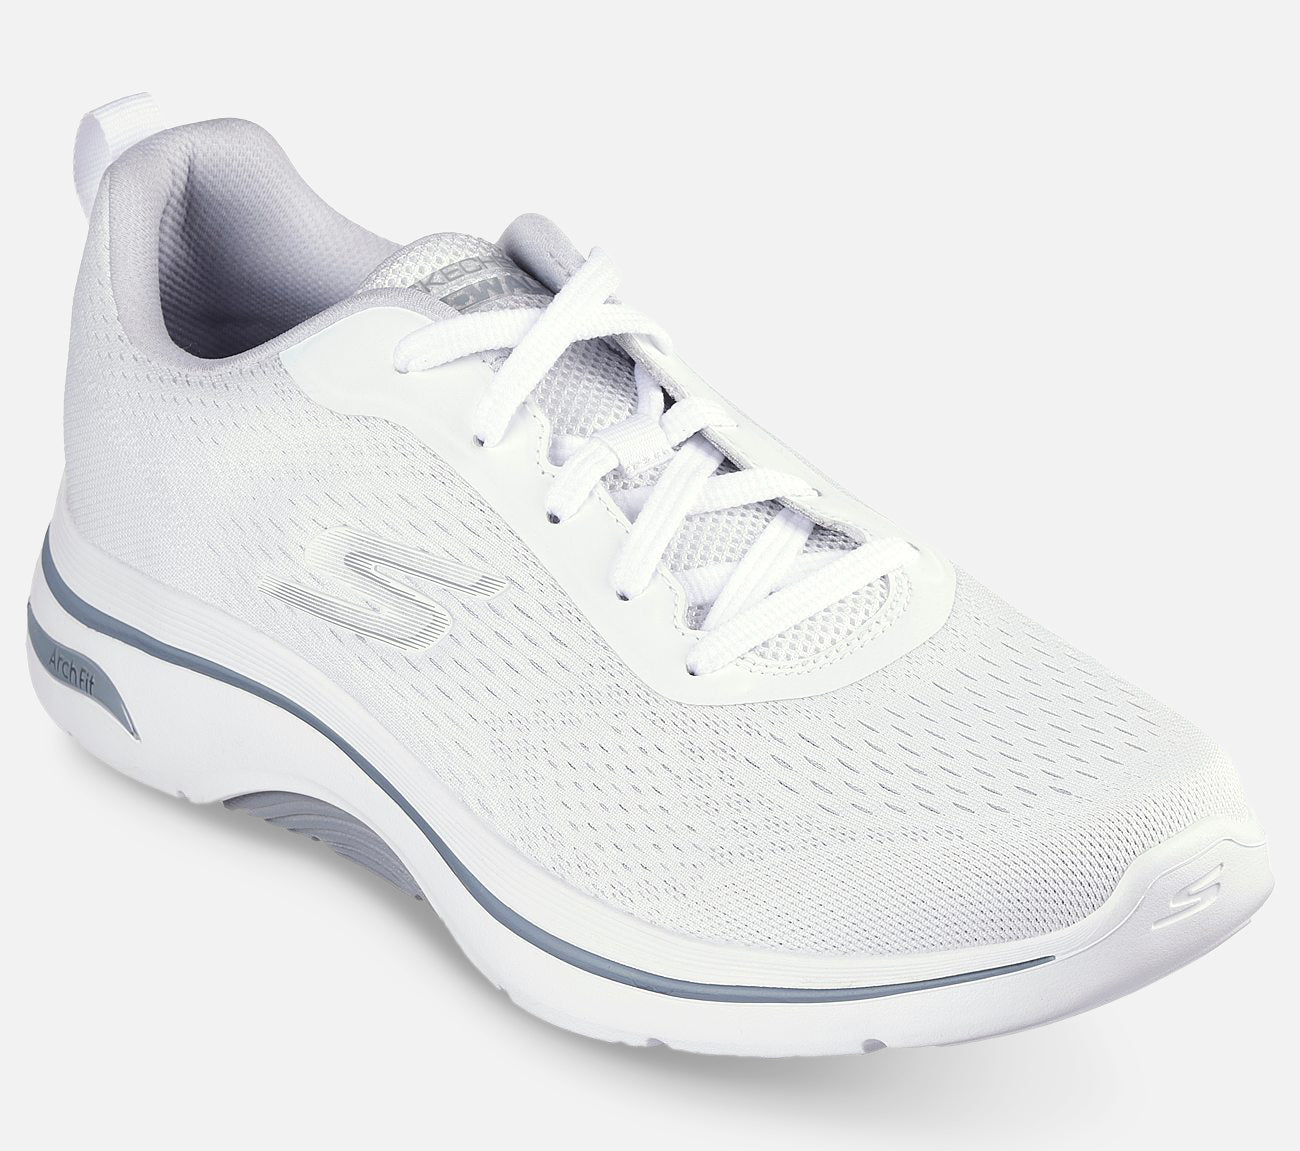 GO WALK Arch Fit 2.0 - Idyllic 2 Shoe Skechers